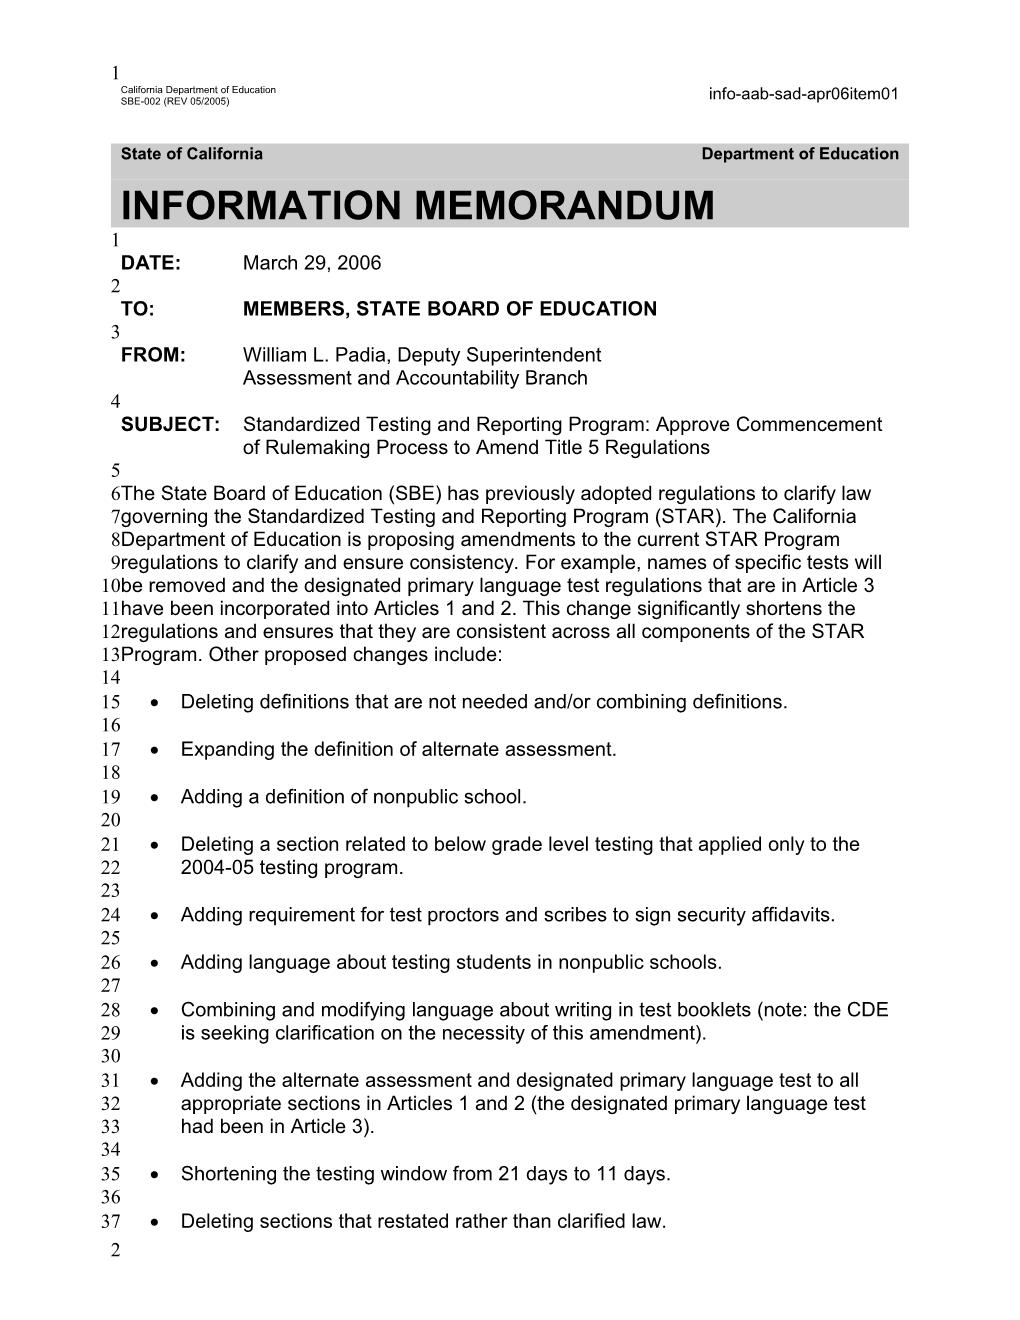 April 2006 Memorandum Item 01 - Information Memorandum (CA State Board of Education)